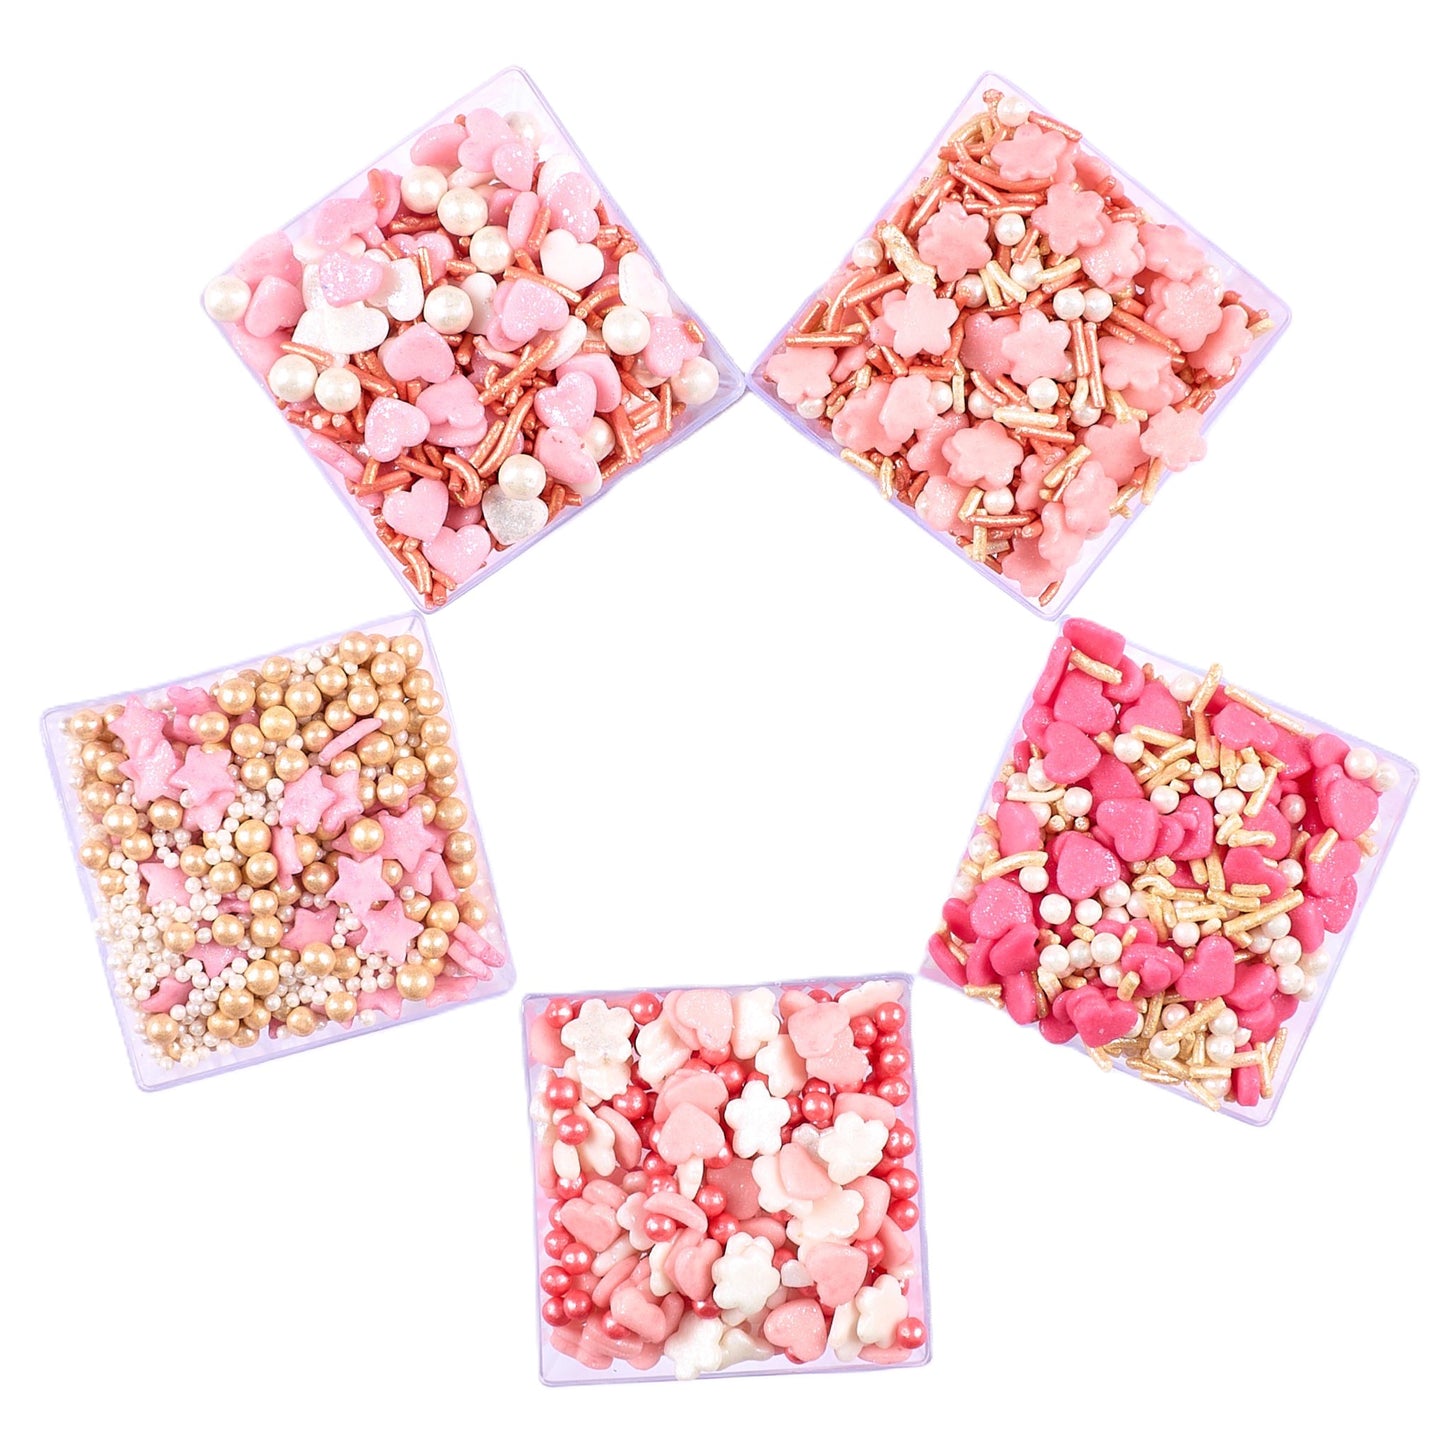 Valentine Sprinkles VS Multipack 09 - 100 gms